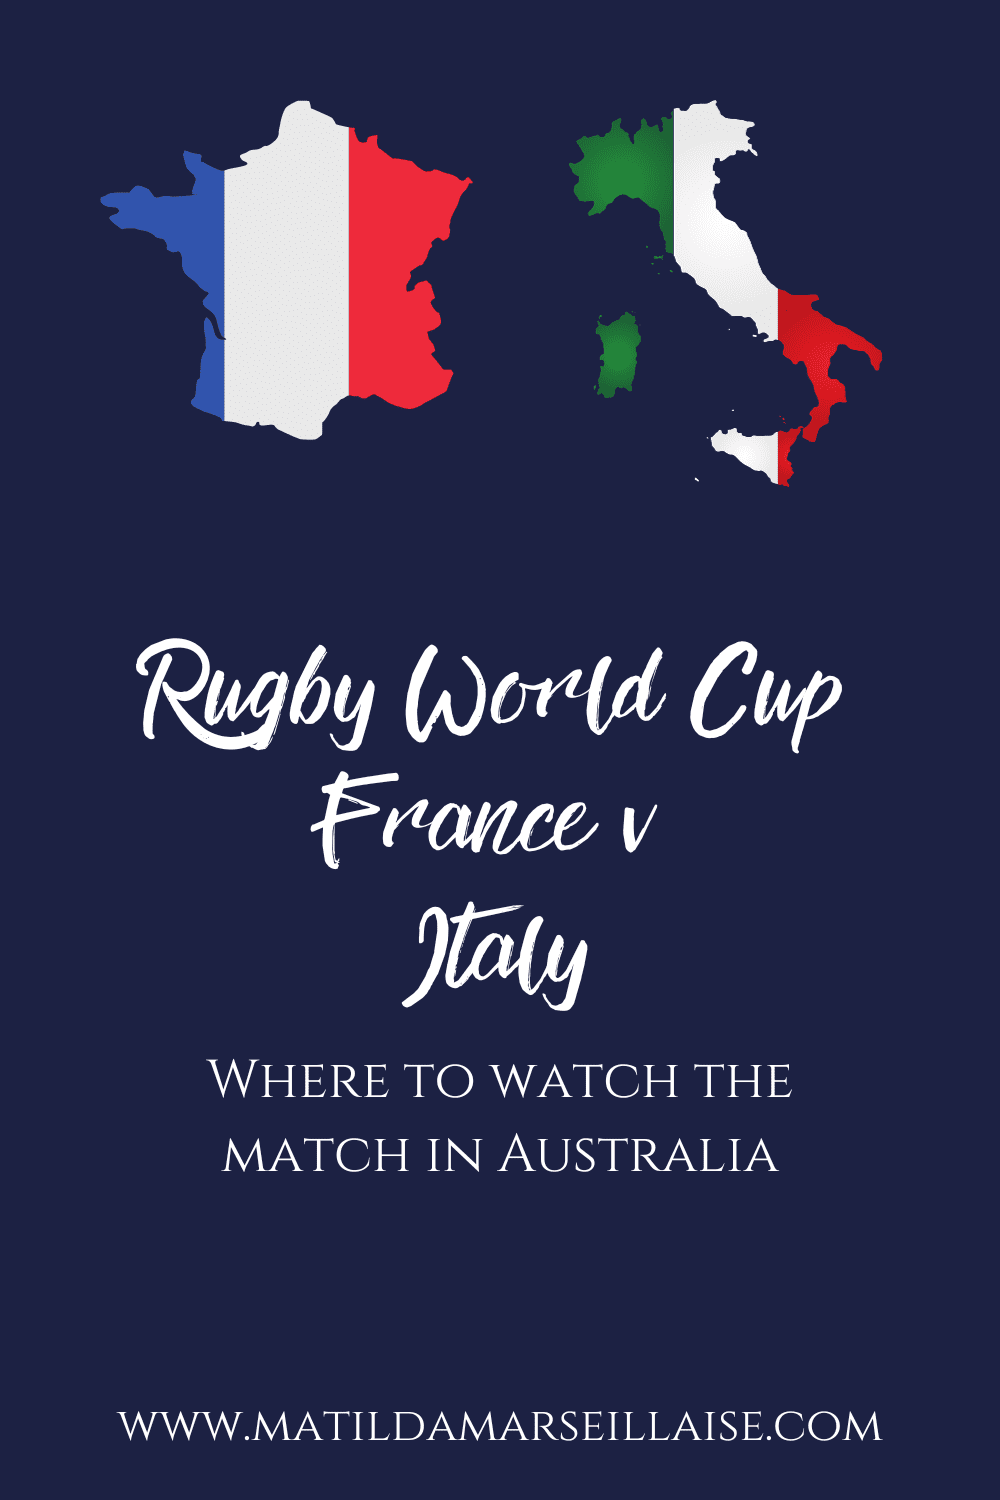 France v Italy in Australia